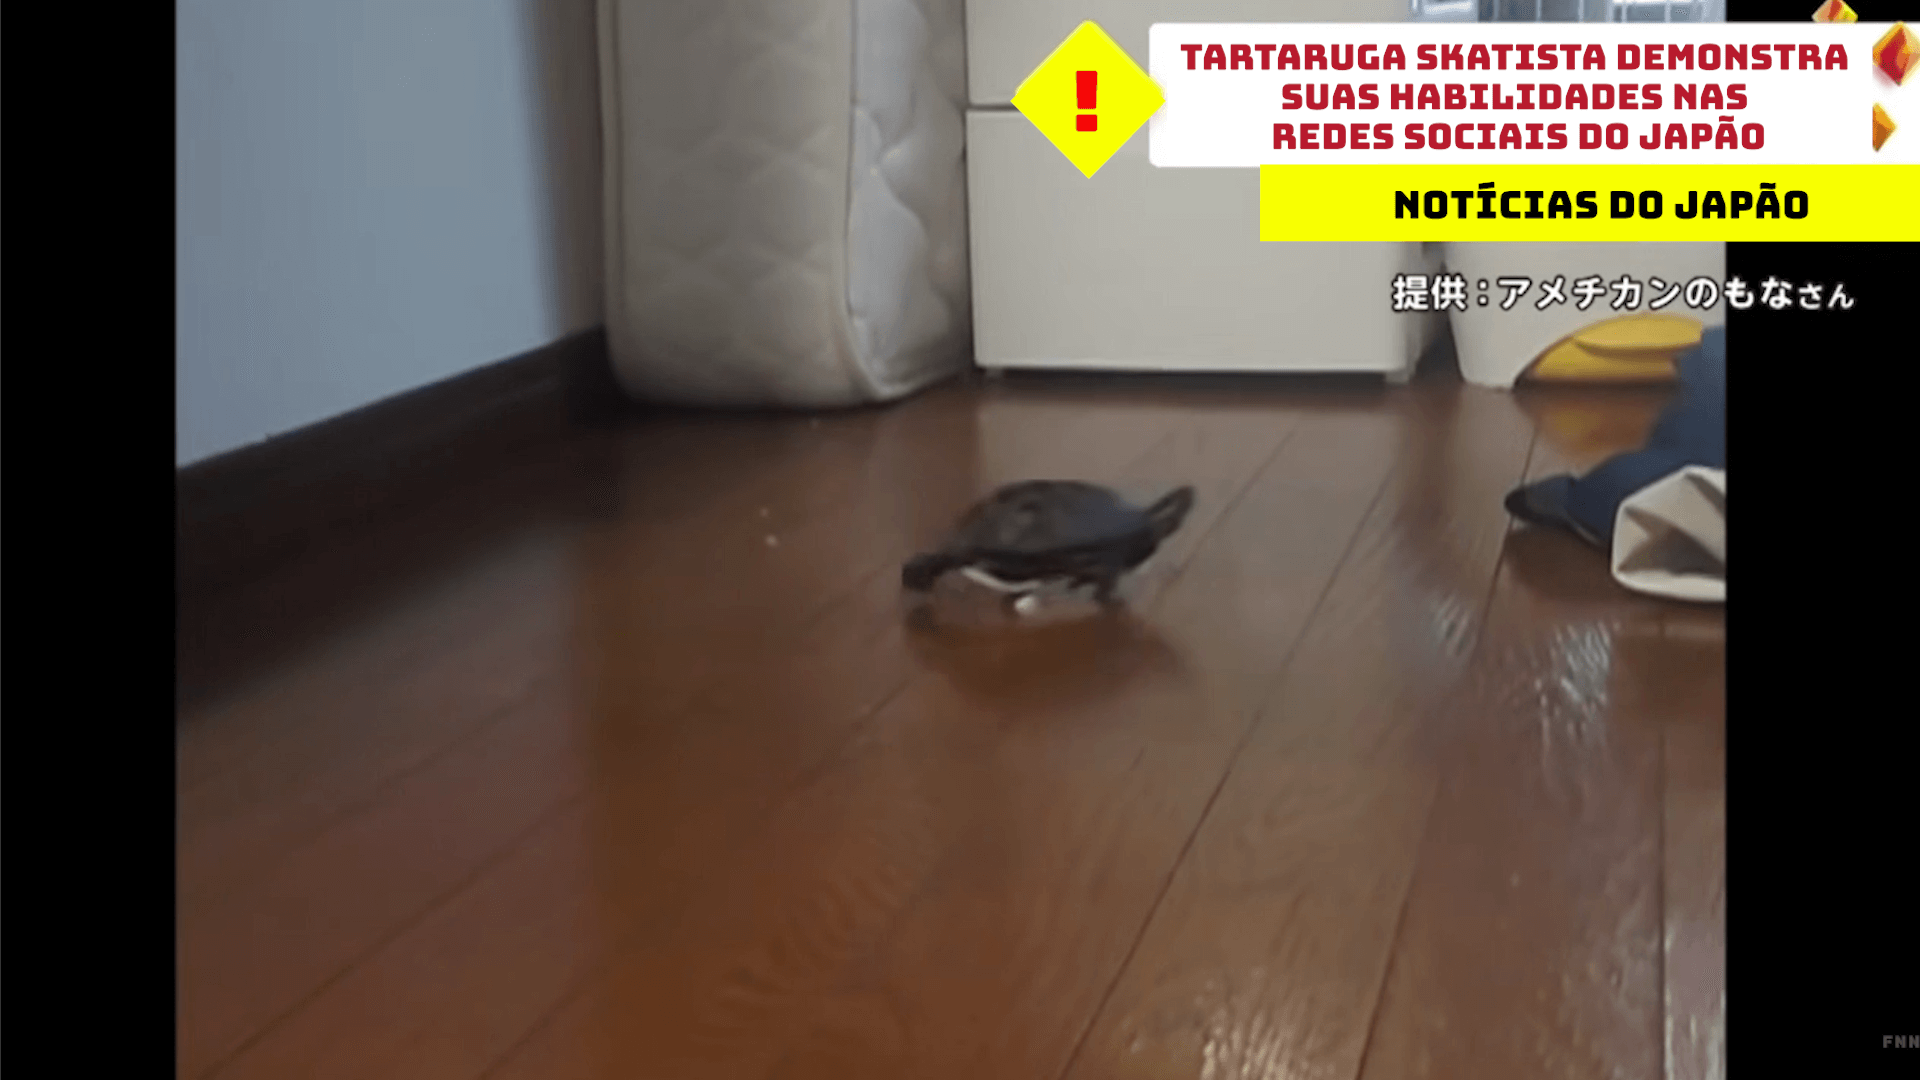 Tartaruga skatista demonstra suas habilidades nas redes sociais do Japão